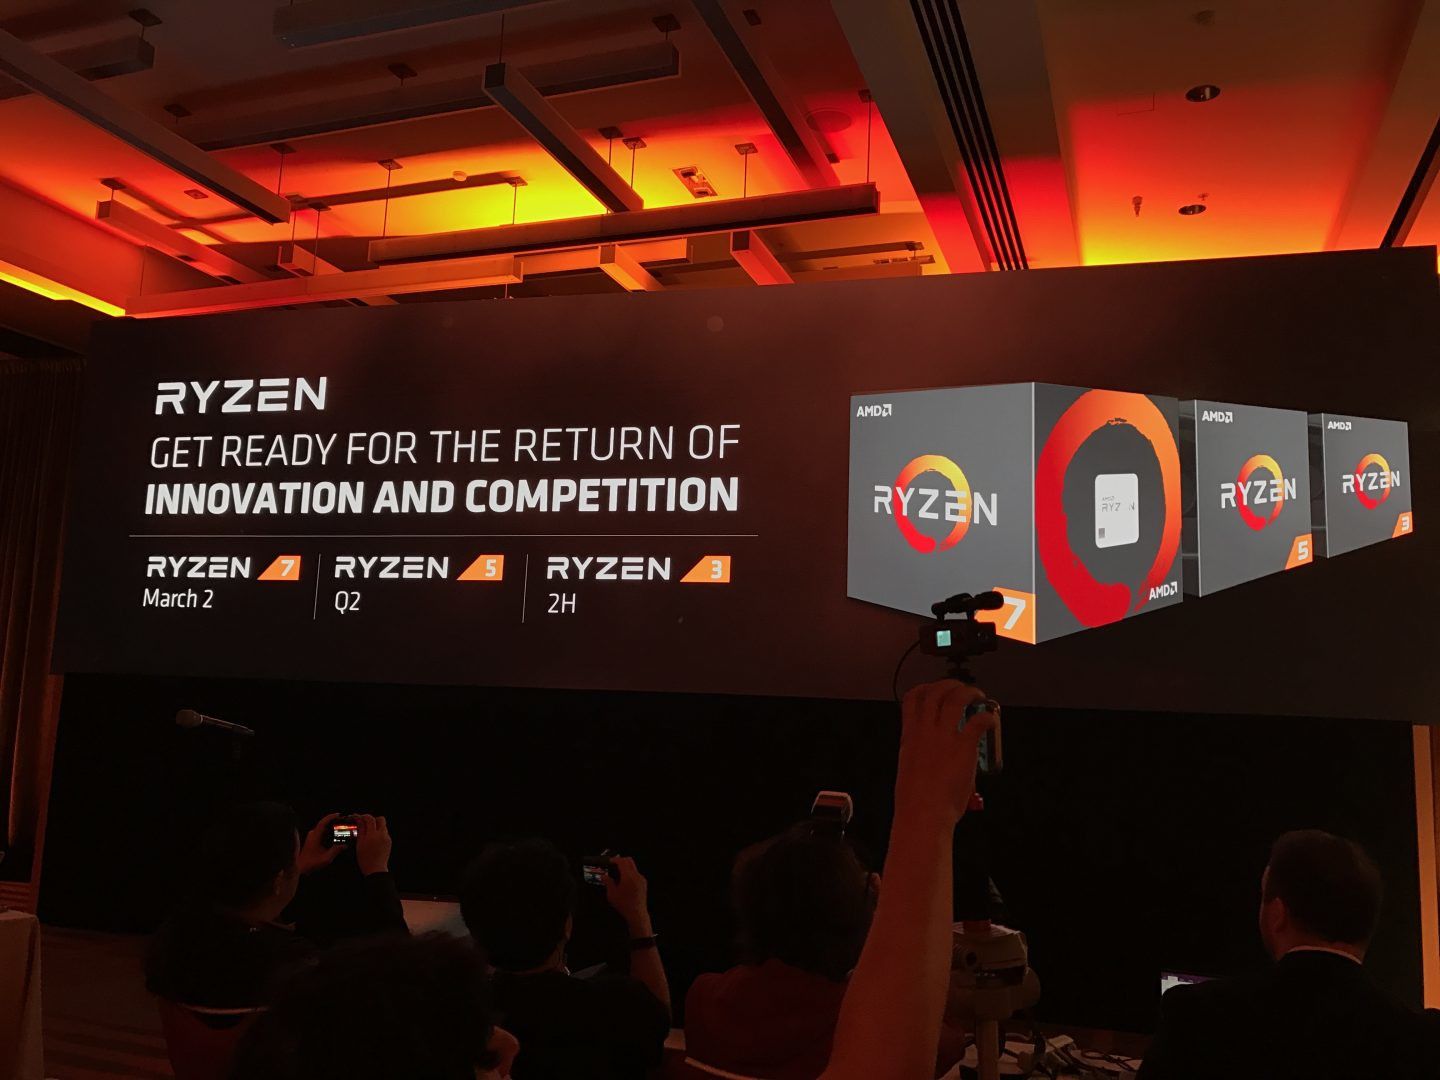 AMD Ryzen Roadmap